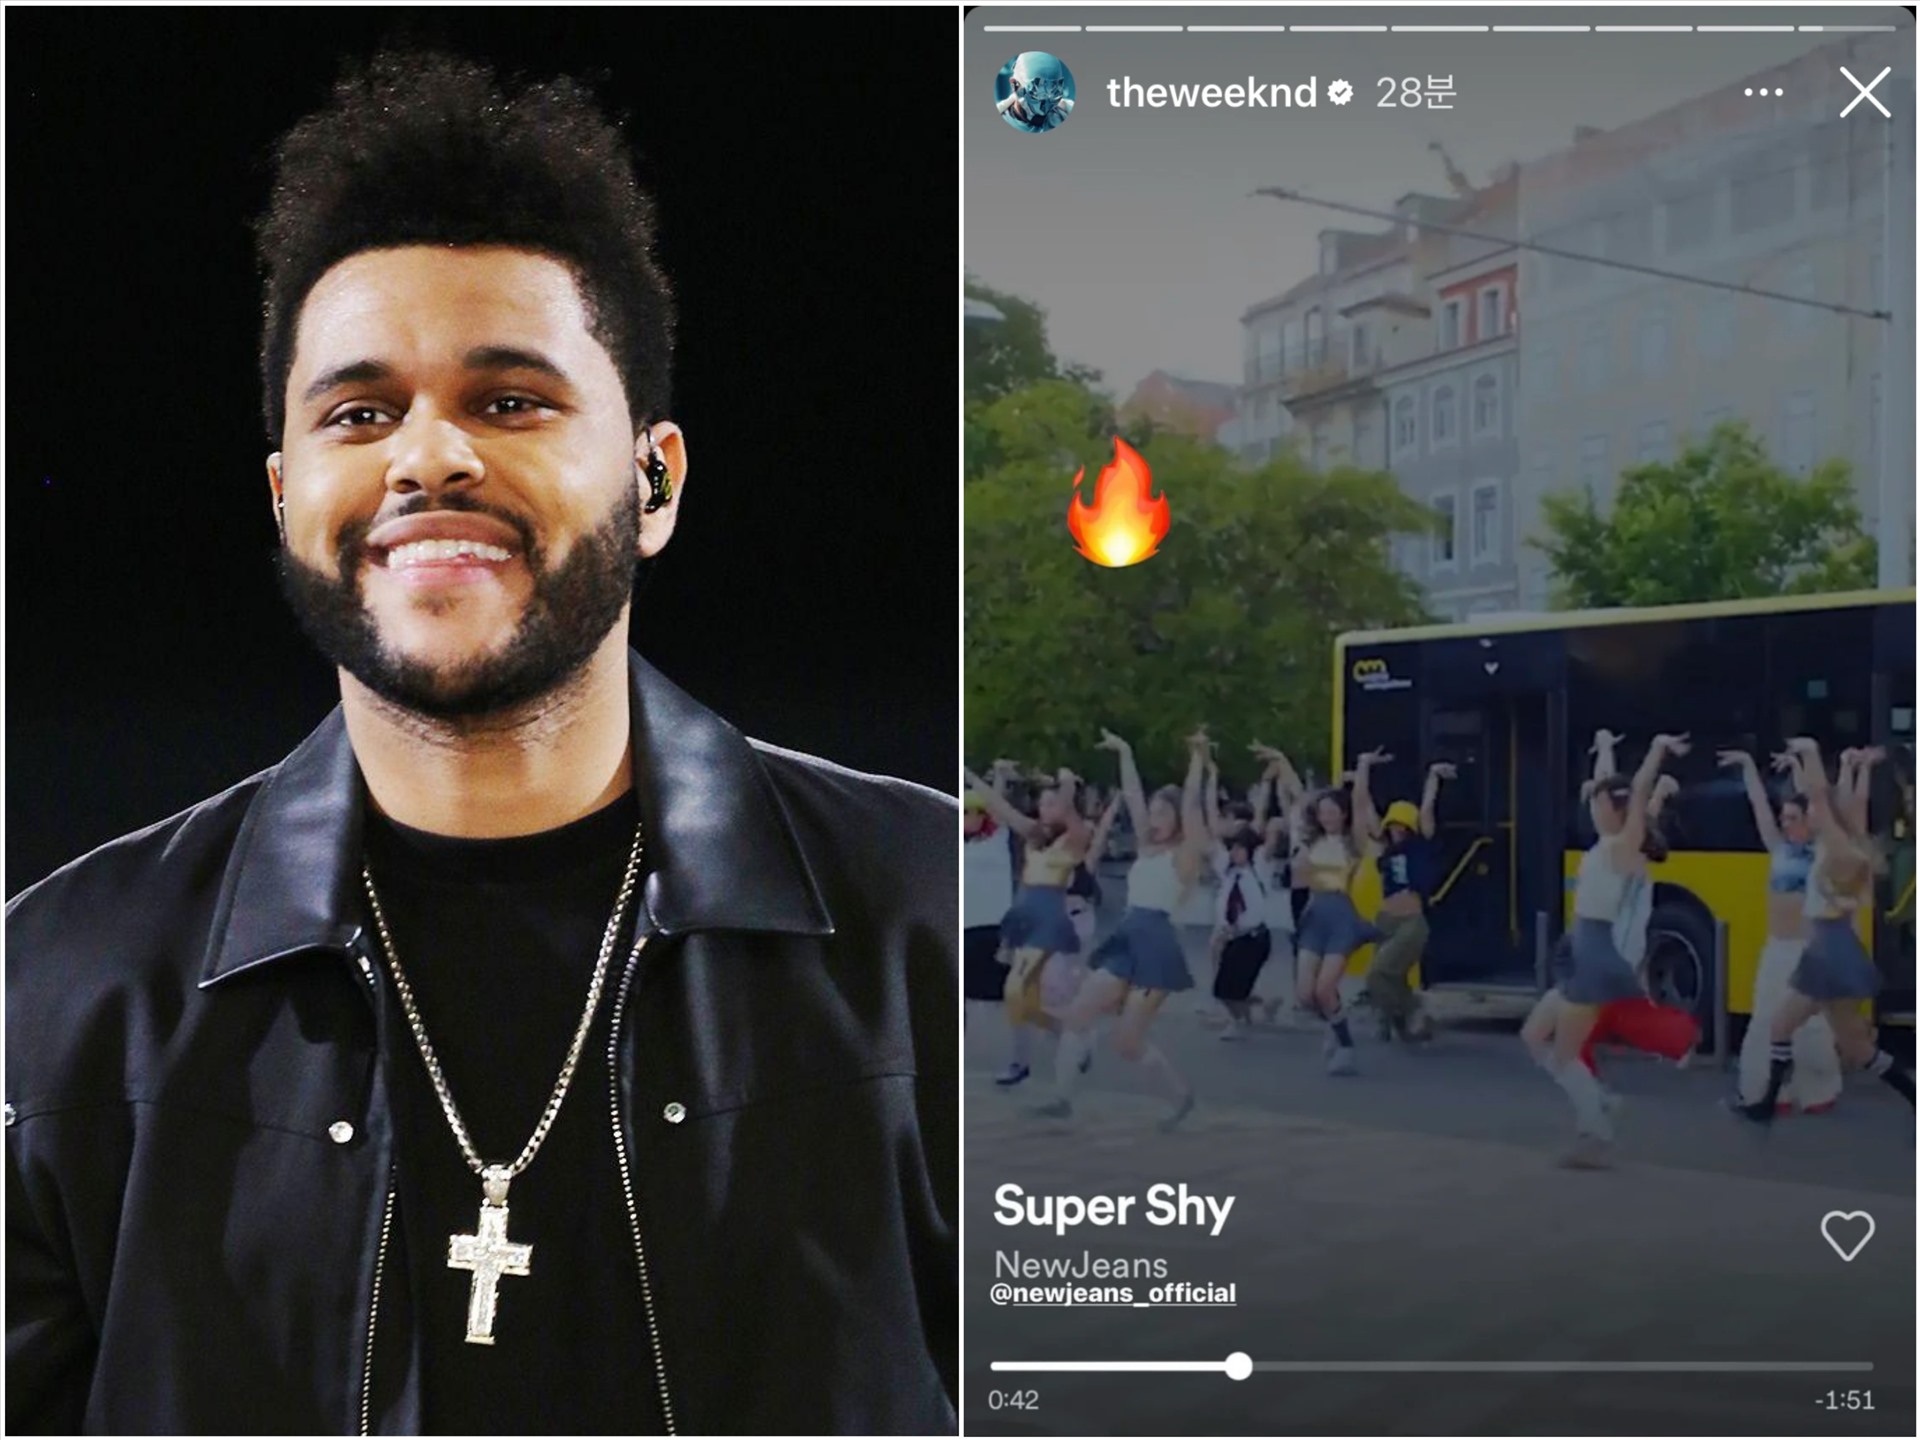 The Weeknd chia sẻ việc đang nghe ca khúc “Super Shy” của NewJeans. Ảnh: Instagram